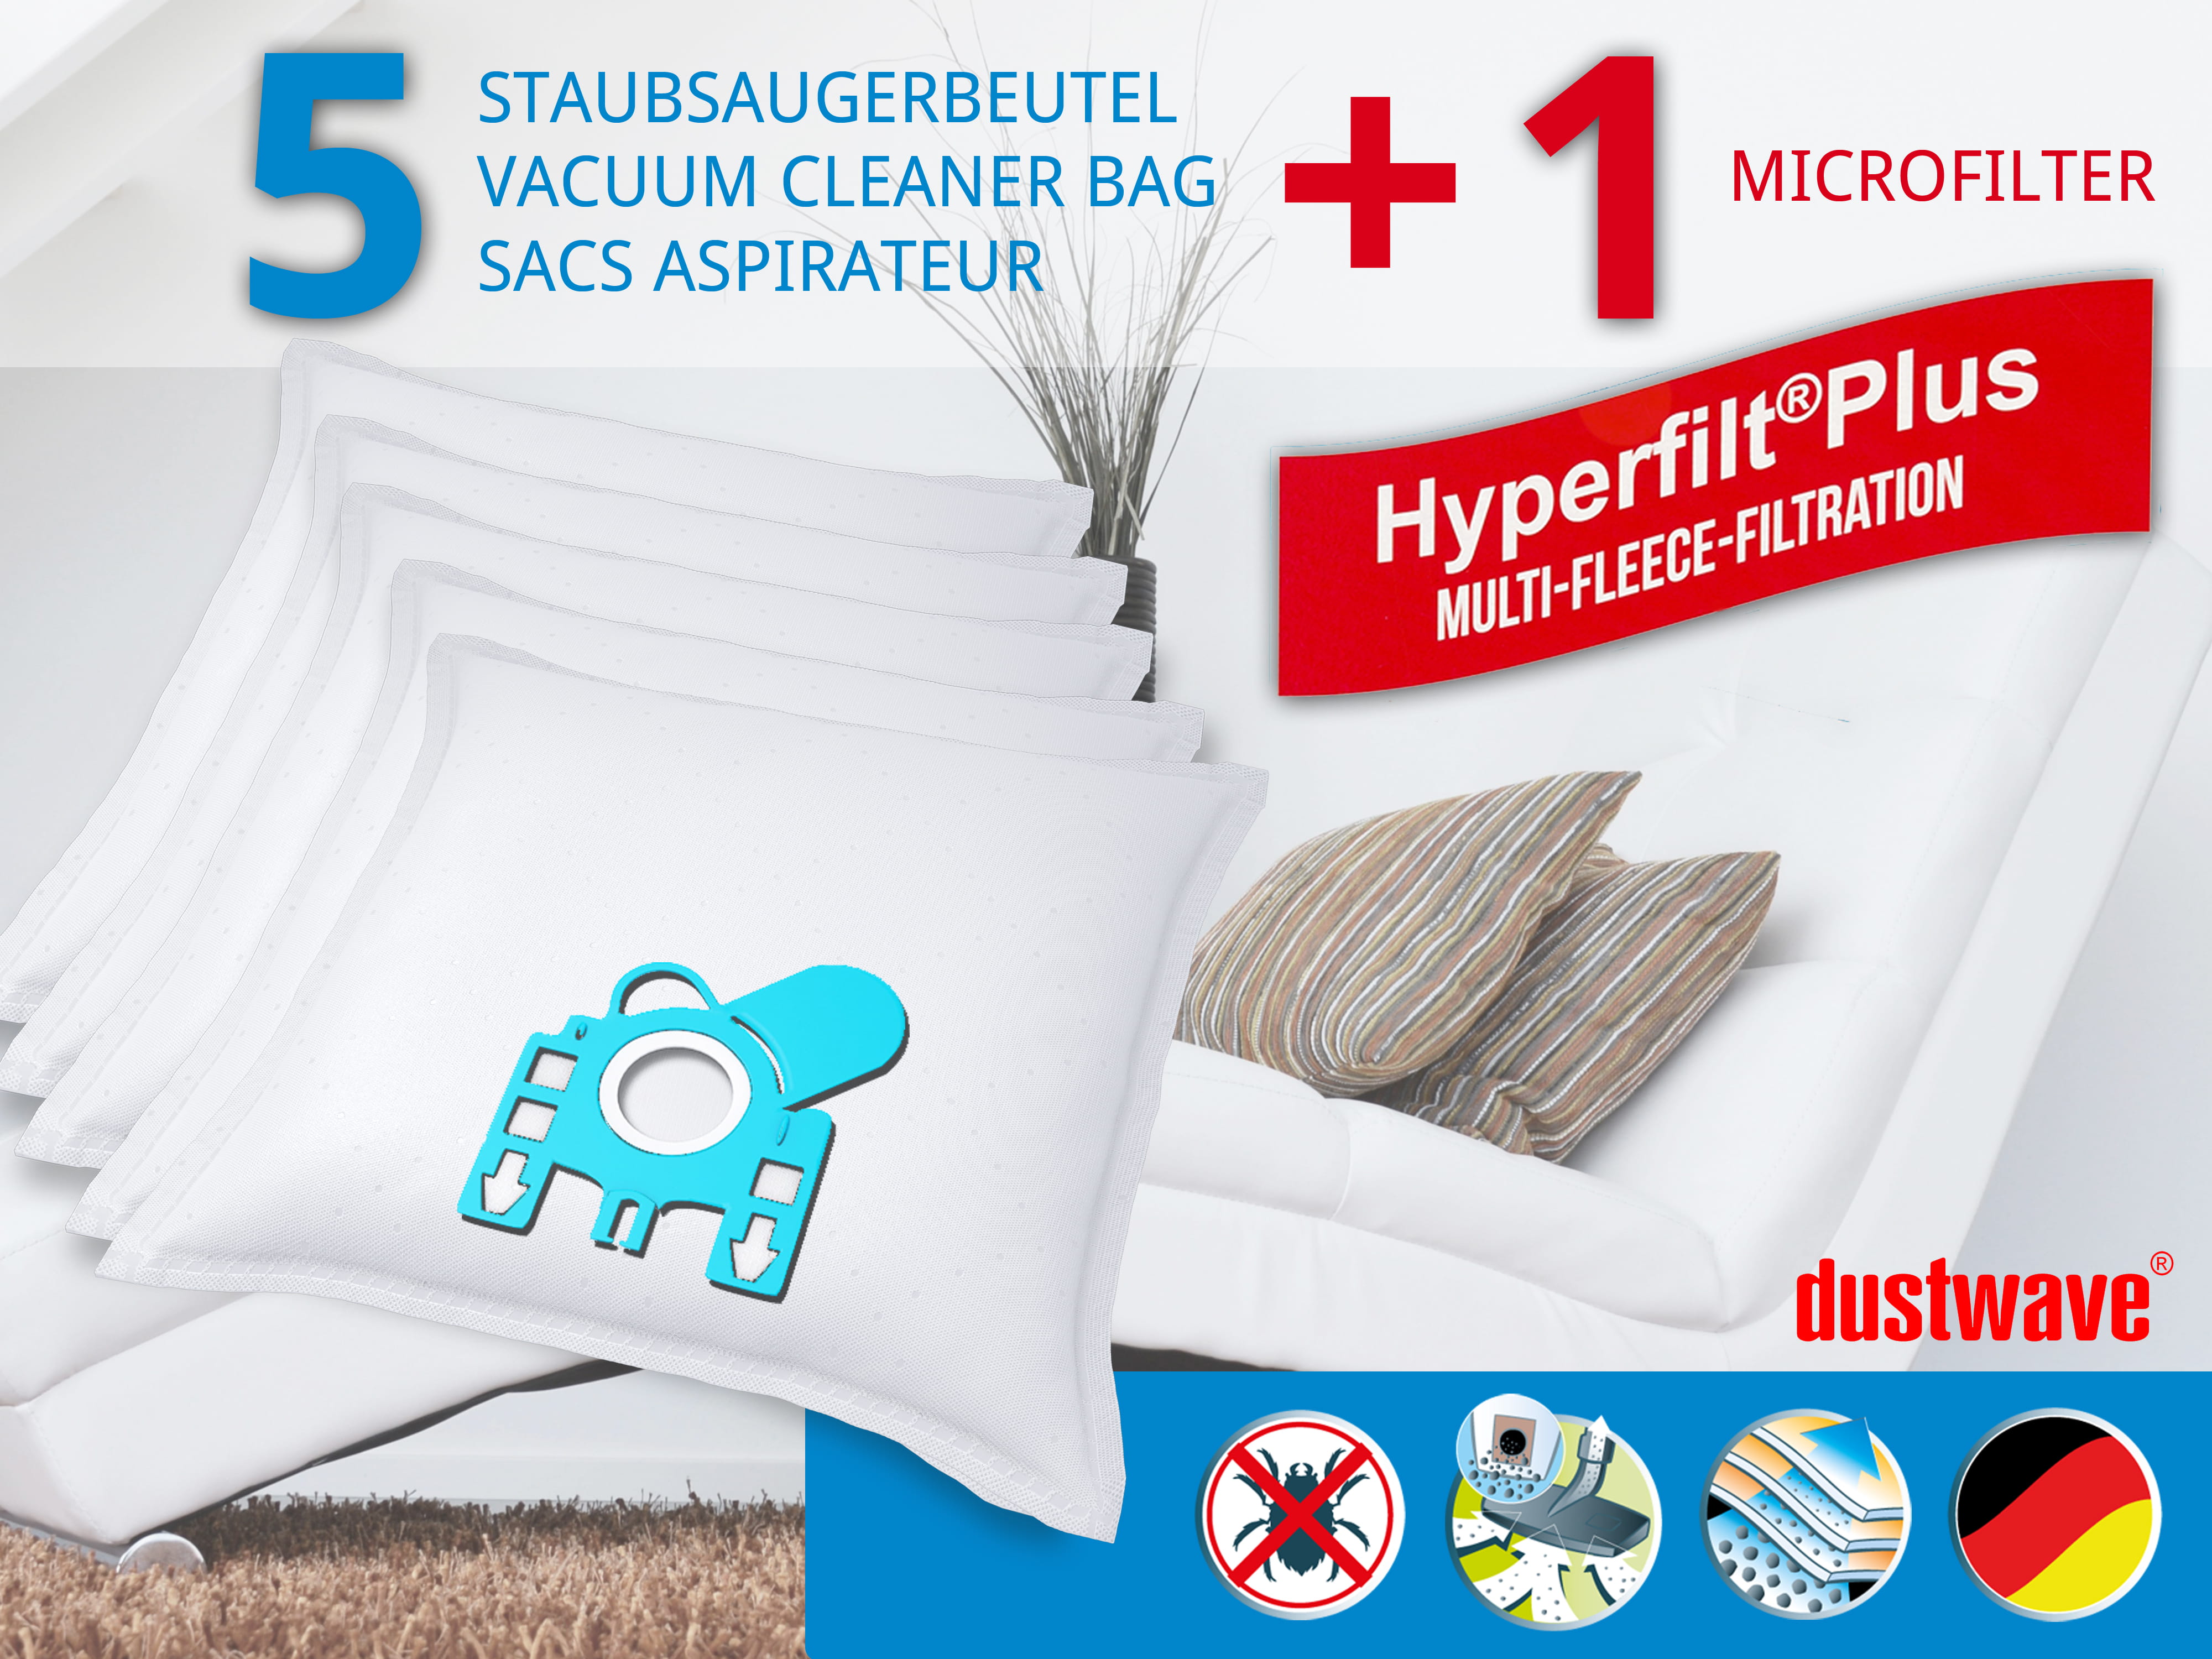 Dustwave® 5 Staubsaugerbeutel für Miele S404i / S 404 i - hocheffizient, mehrlagiges Mikrovlies mit Hygieneverschluss - Made in Germany